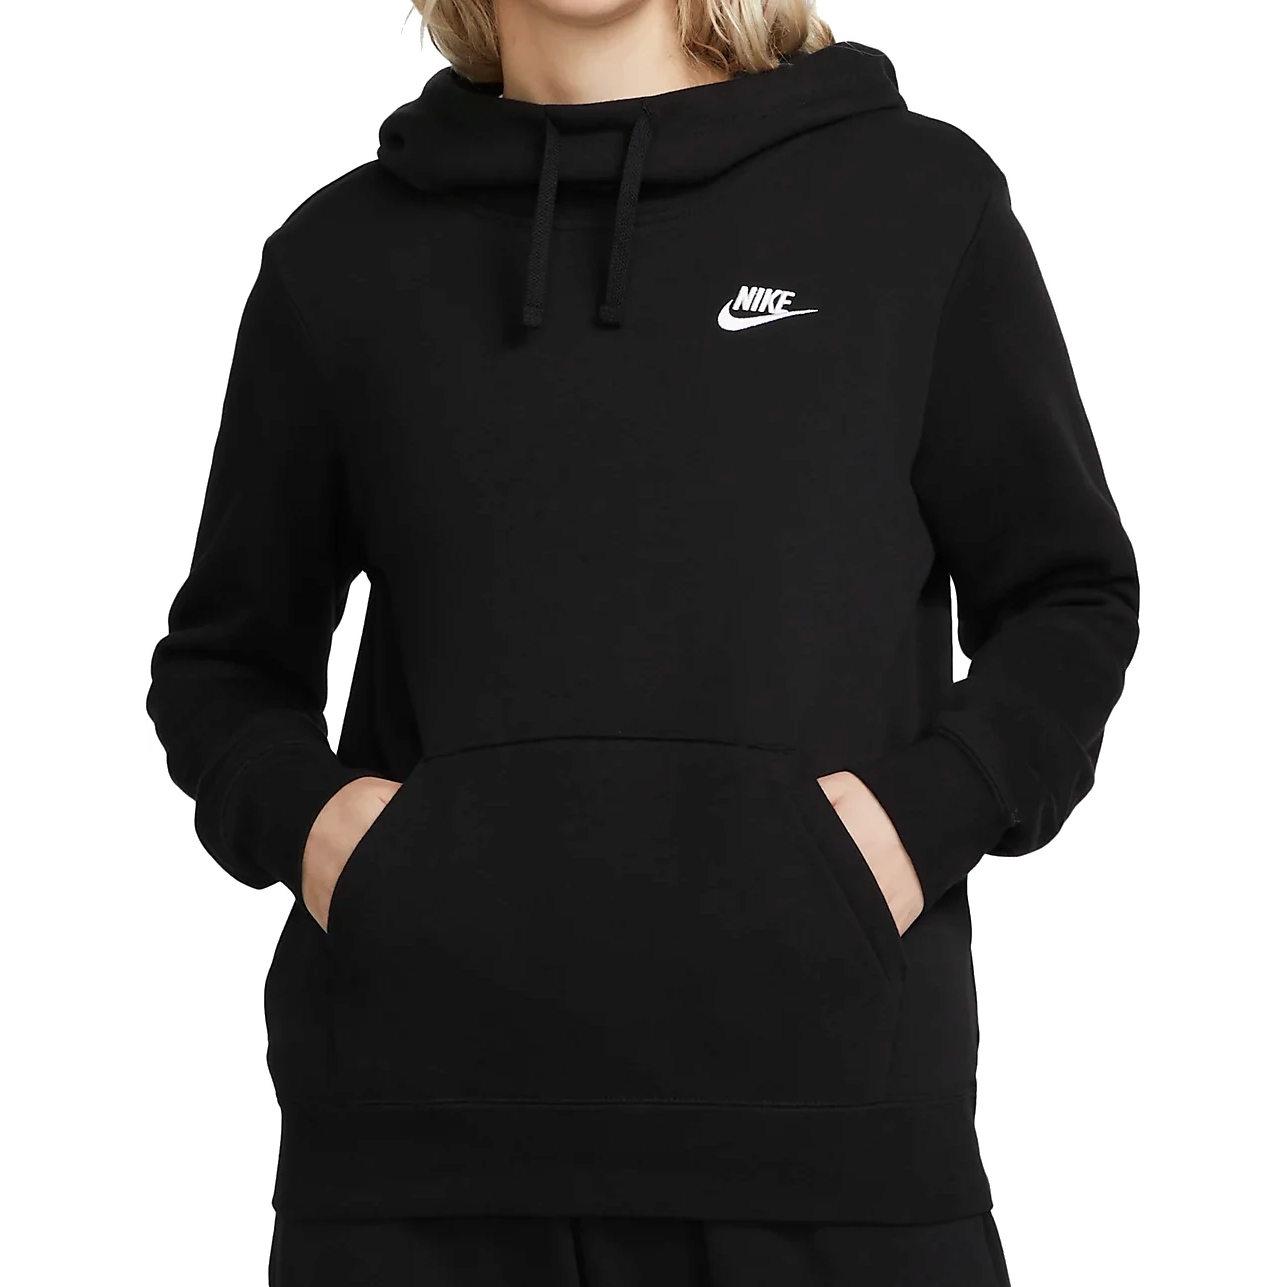 Bild von Nike Sportswear Club Fleece Damen-Hoodie mit hohem Kragen - schwarz/weiß DQ5415-010